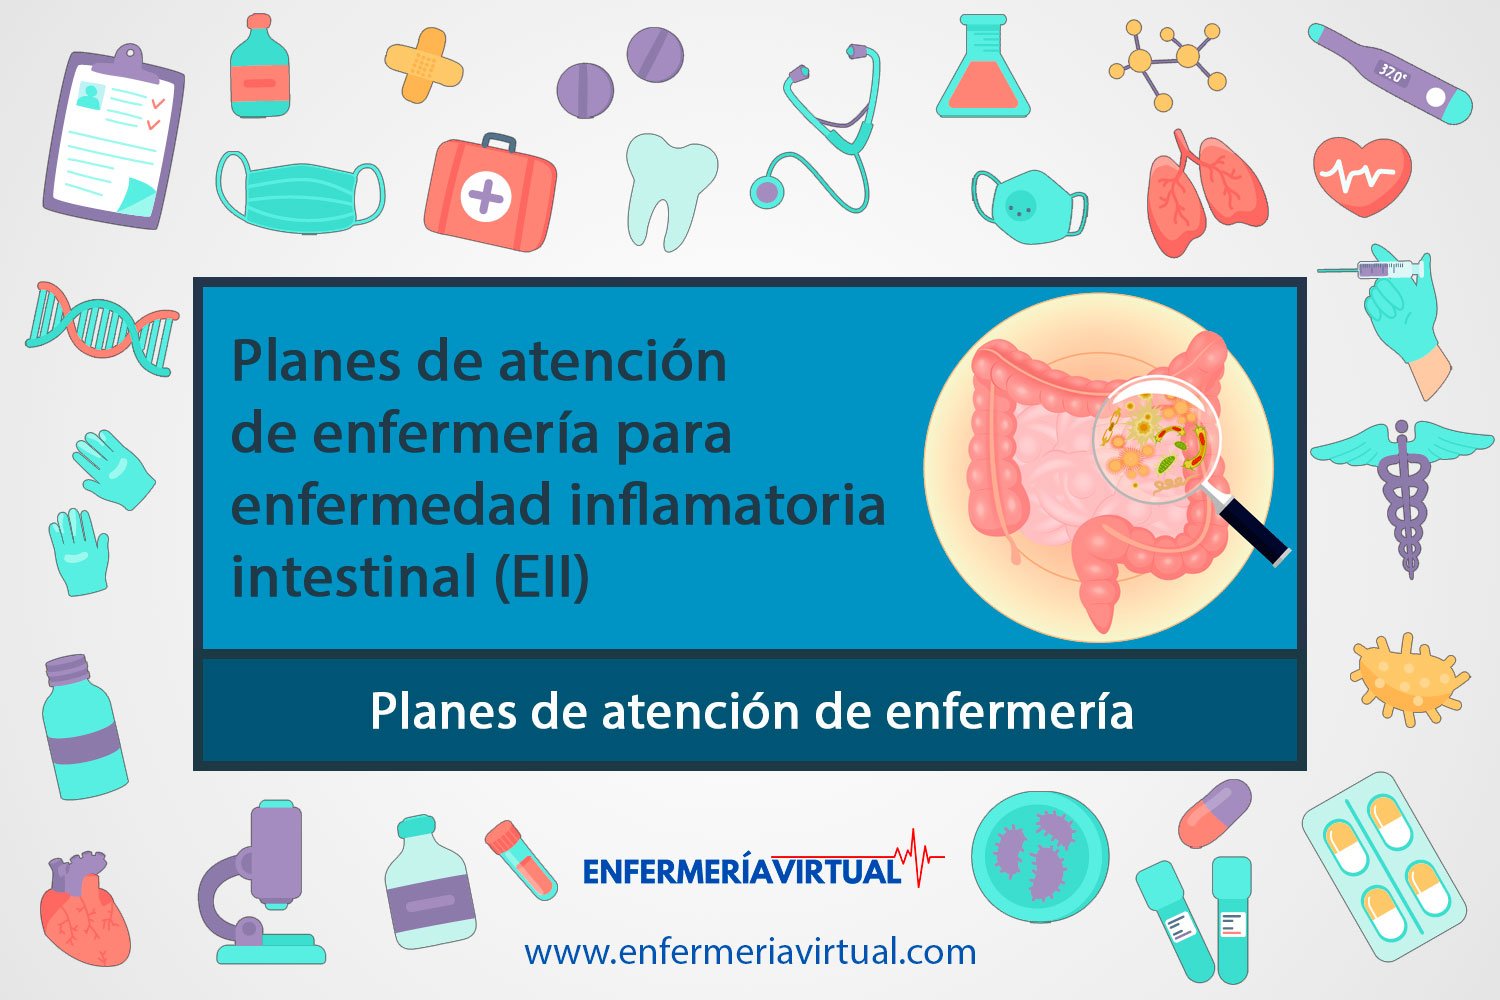 Planes de atención de enfermería para enfermedad inflamatoria intestinal (EII)